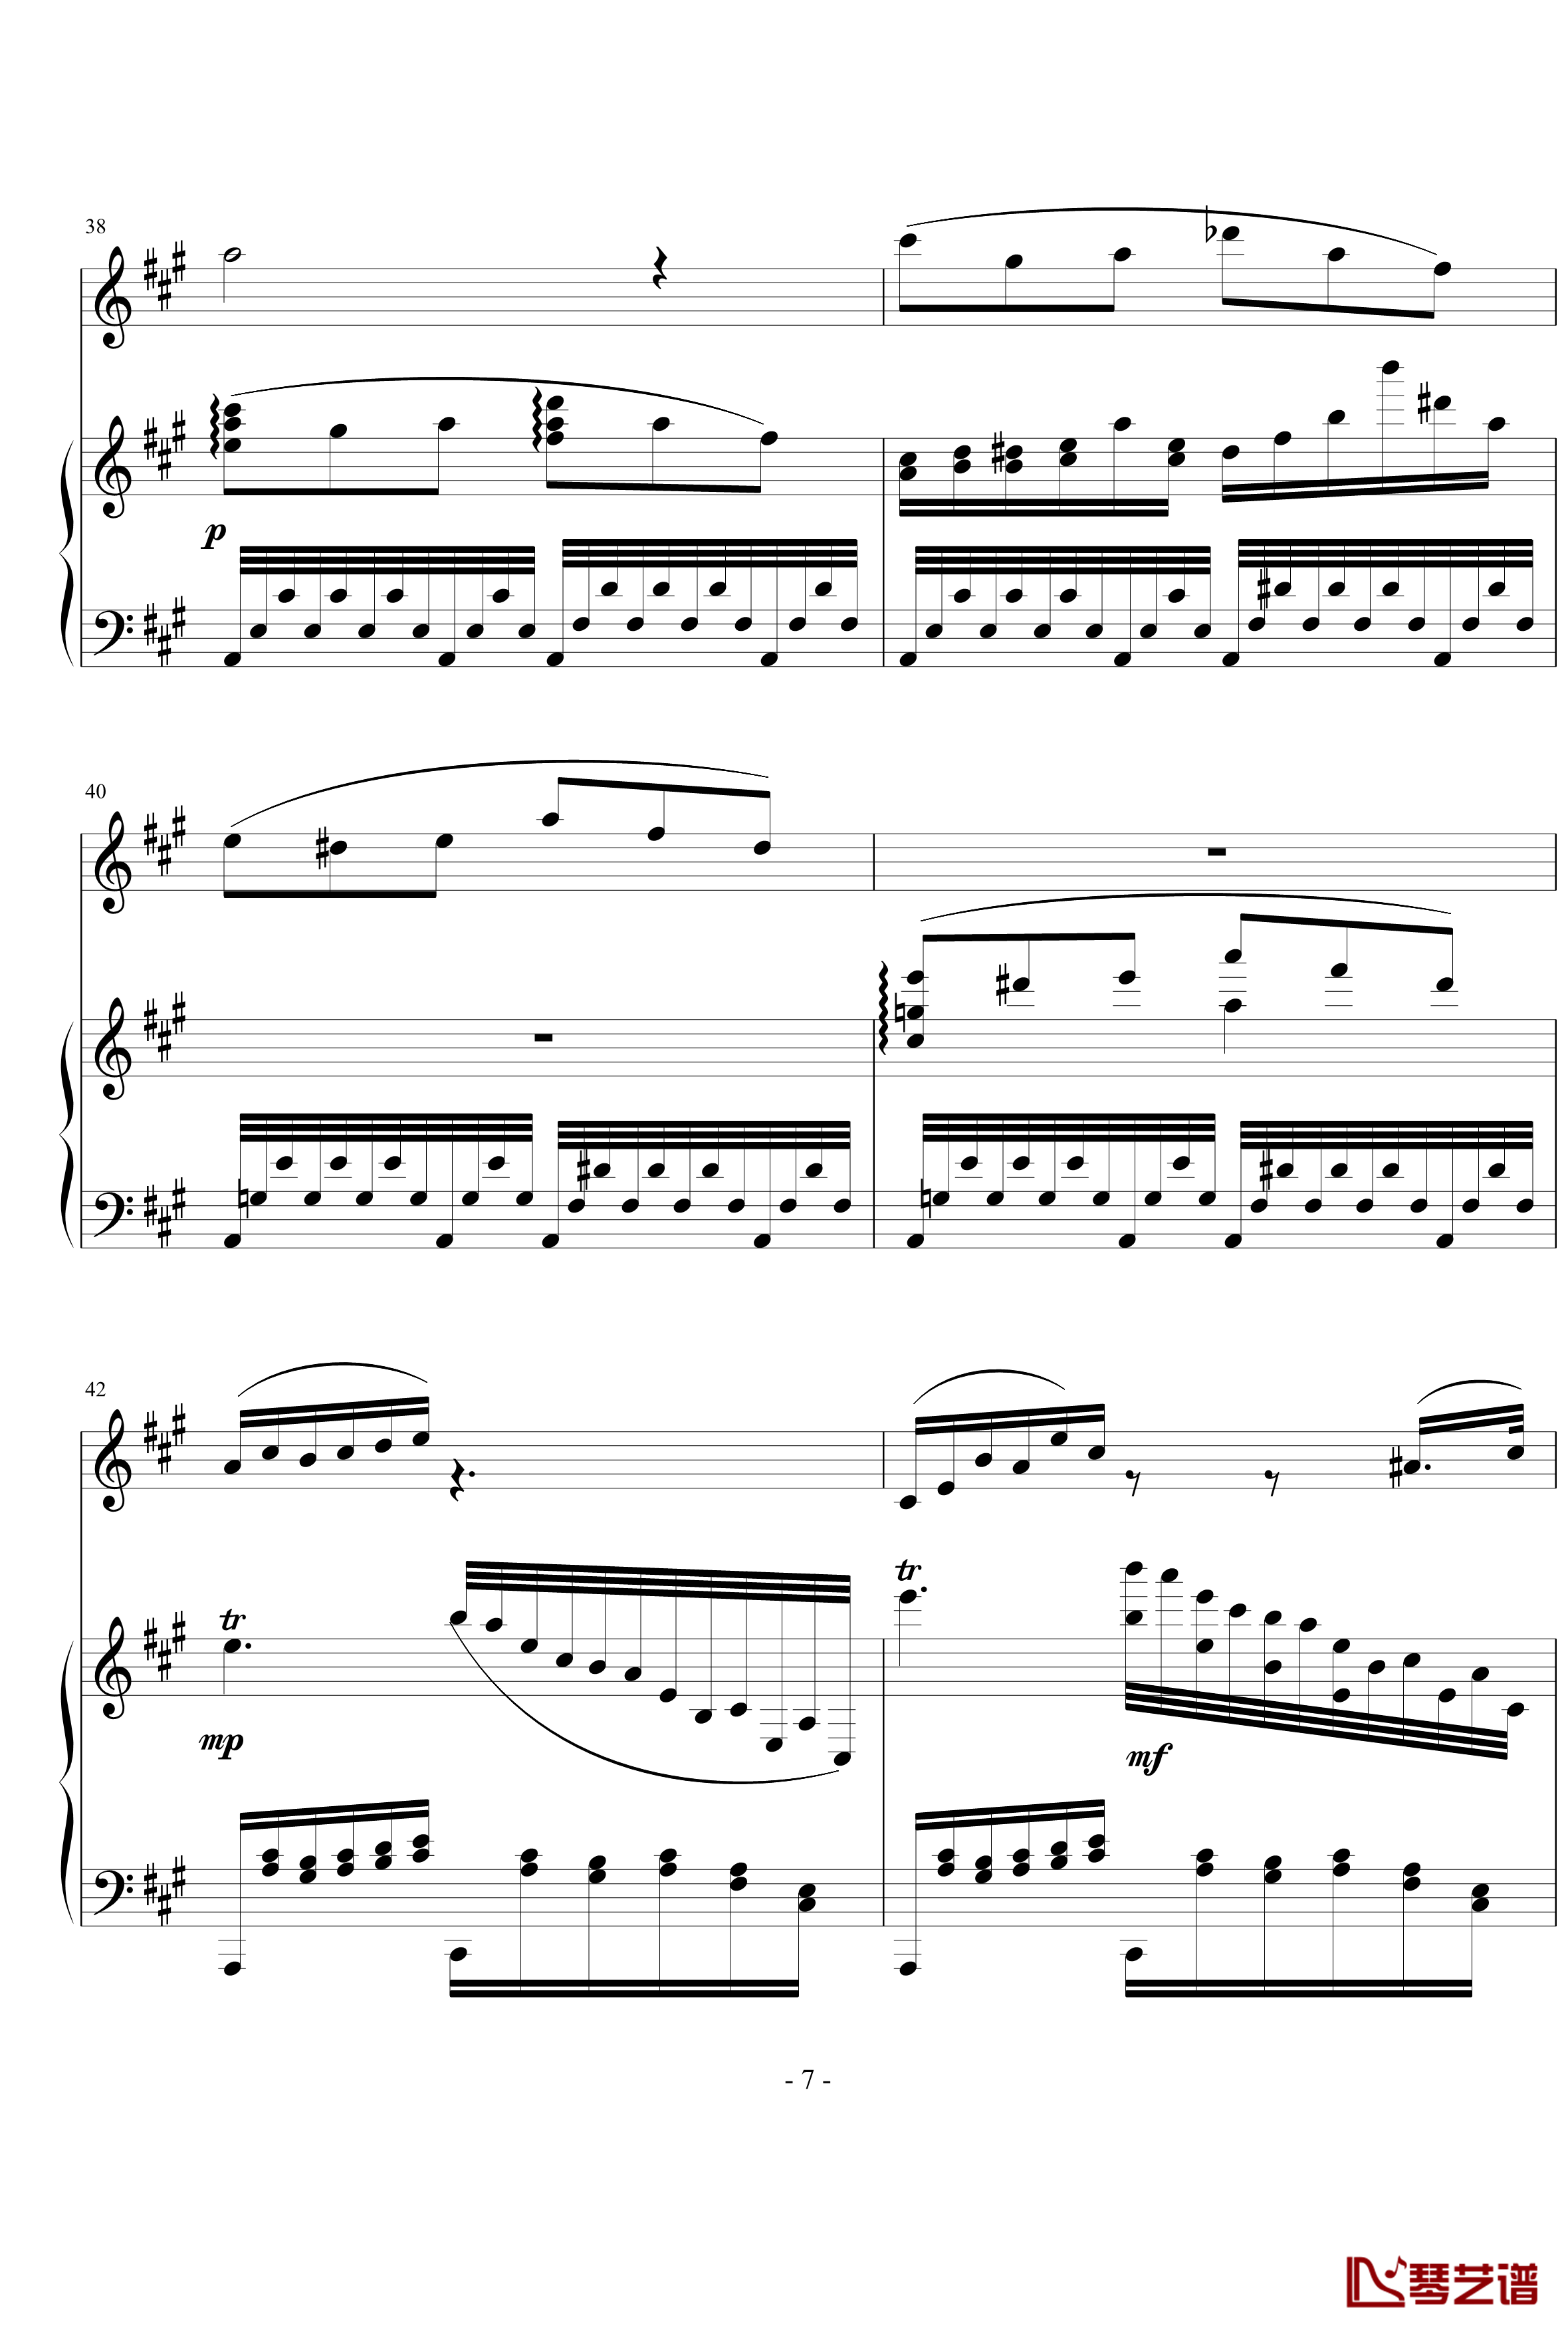 钢琴单簧管小奏鸣曲钢琴谱-nyride7